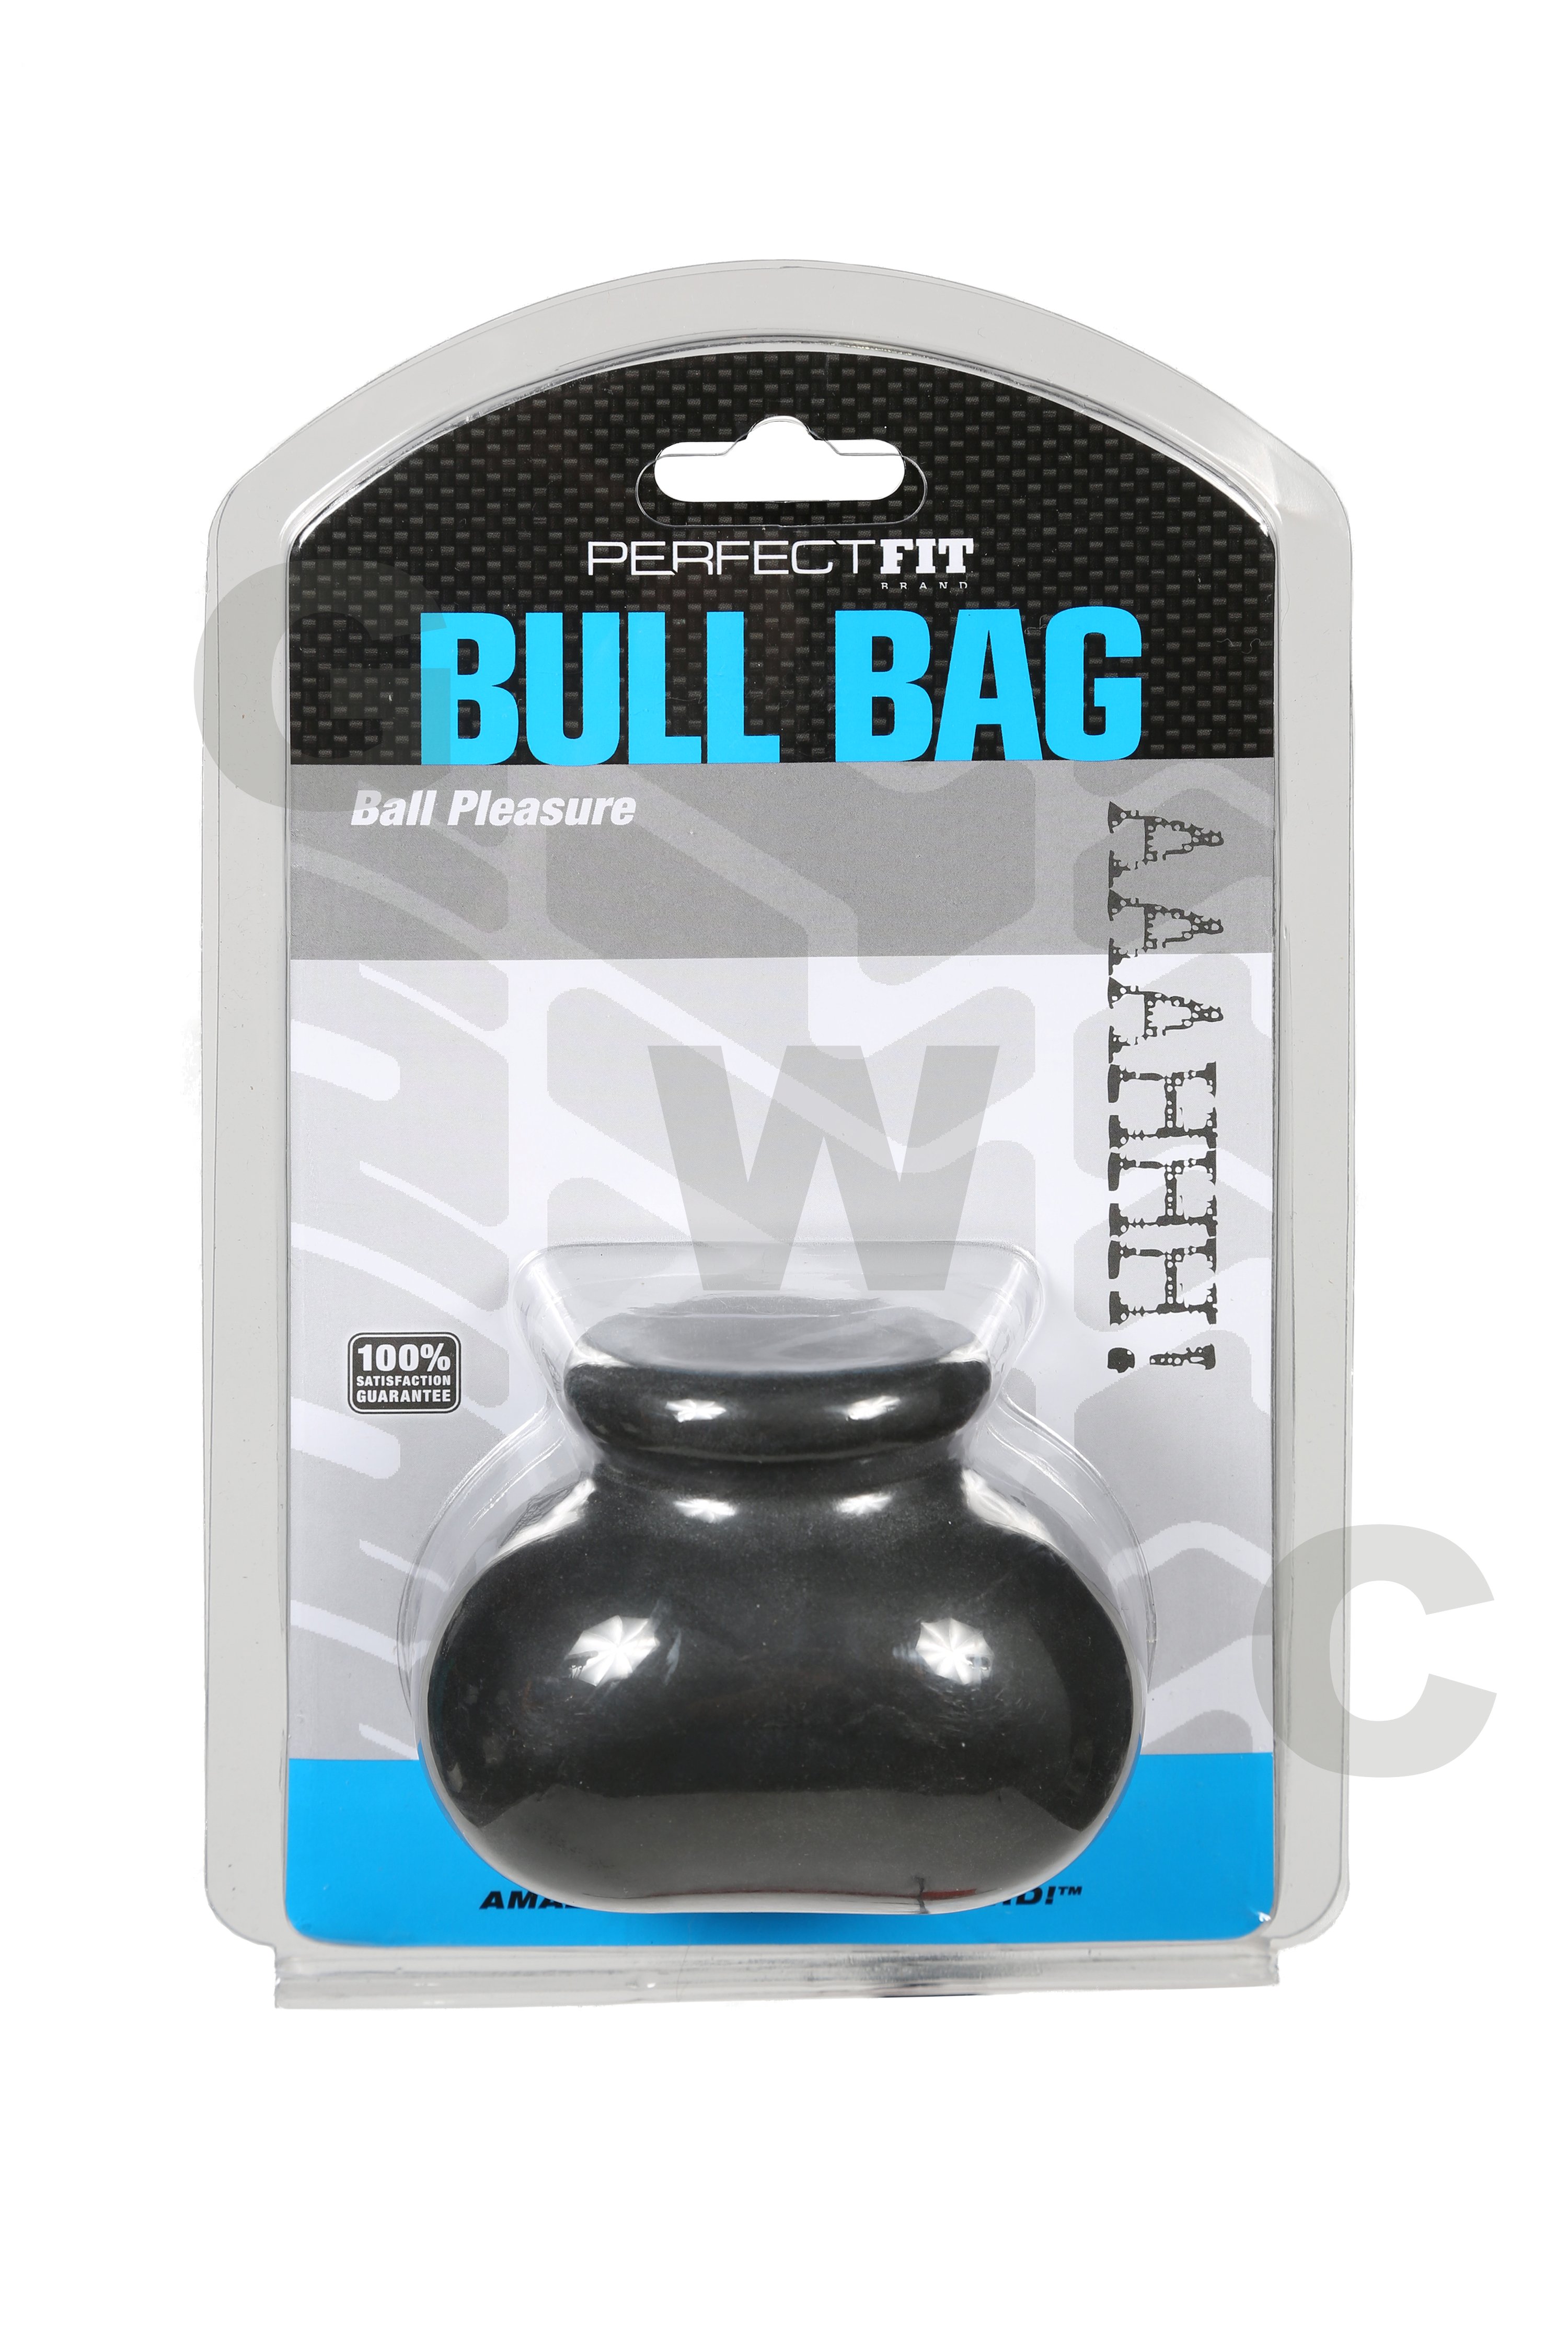 bull-bag_package_B_HIGHRES.jpg